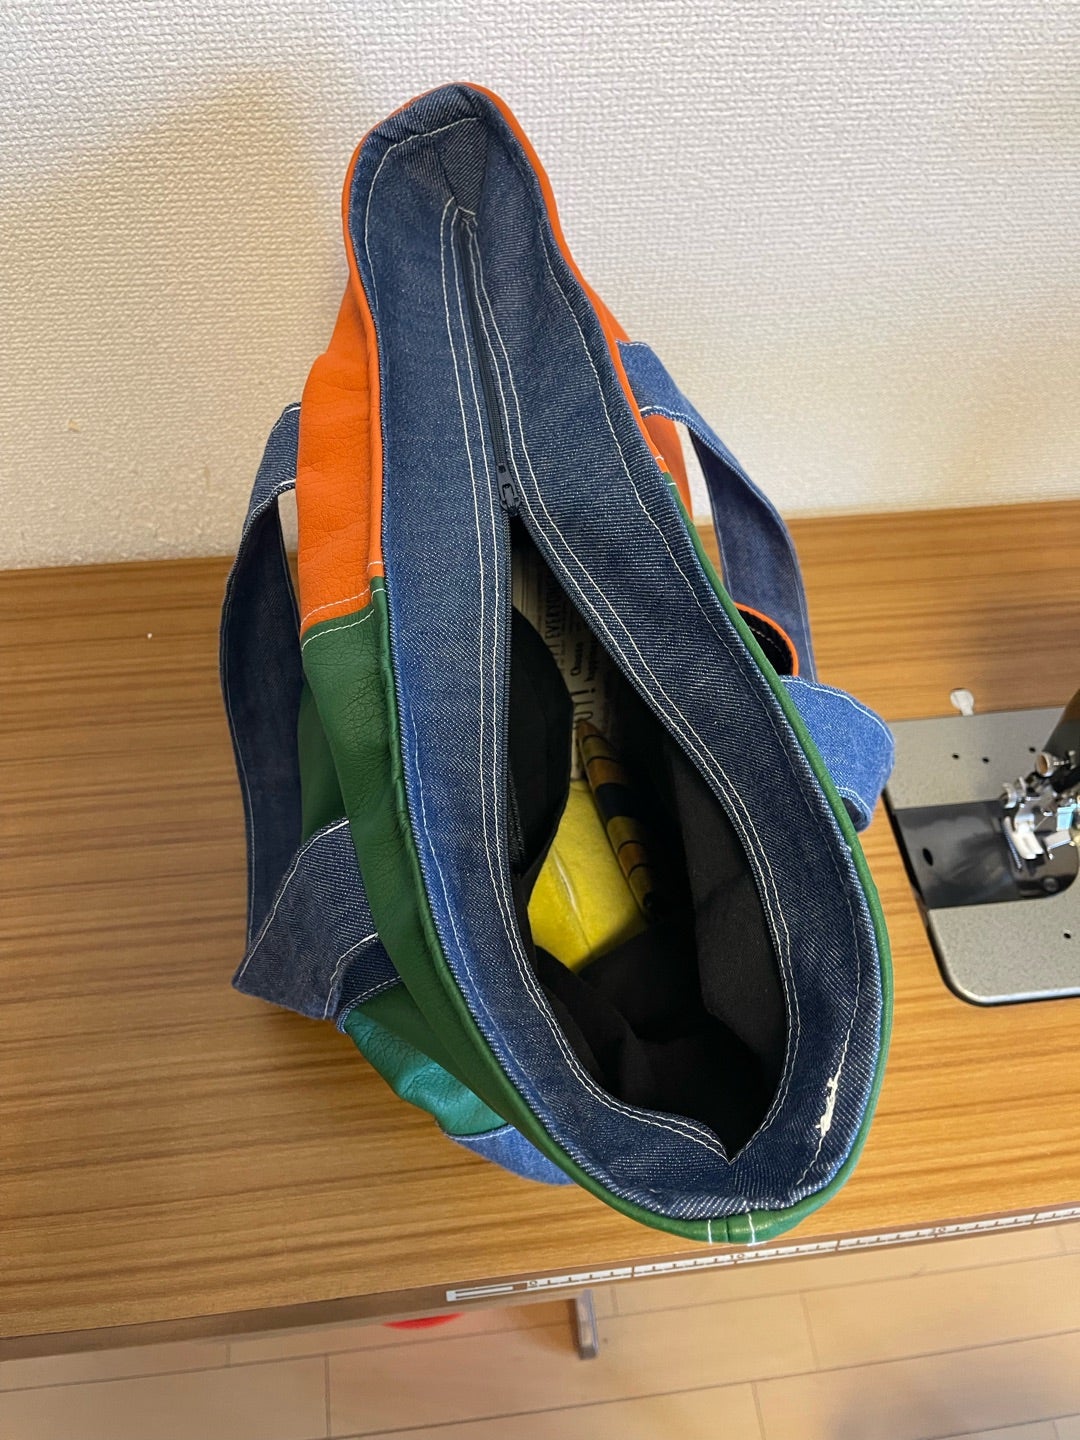 レザーのバッグを作りました【大阪梅田プライベート占いサロン侑詩徹占のブログ】